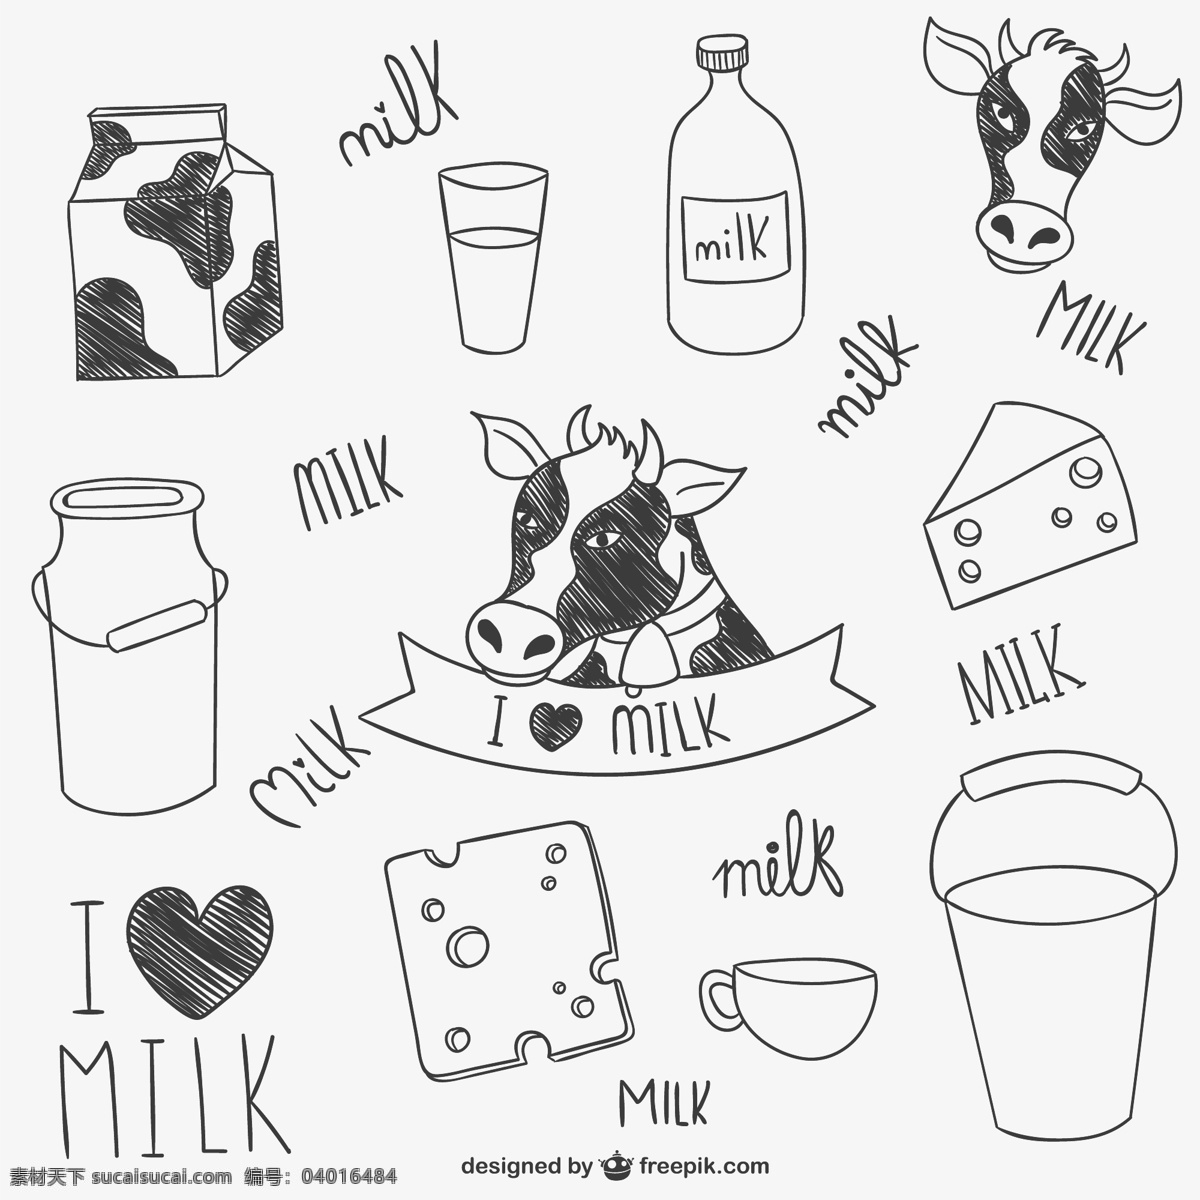 手绘 奶牛 牛奶 制品 爱心 杯子 奶酪 奶瓶 矢量图 丝带 桶 其他矢量图